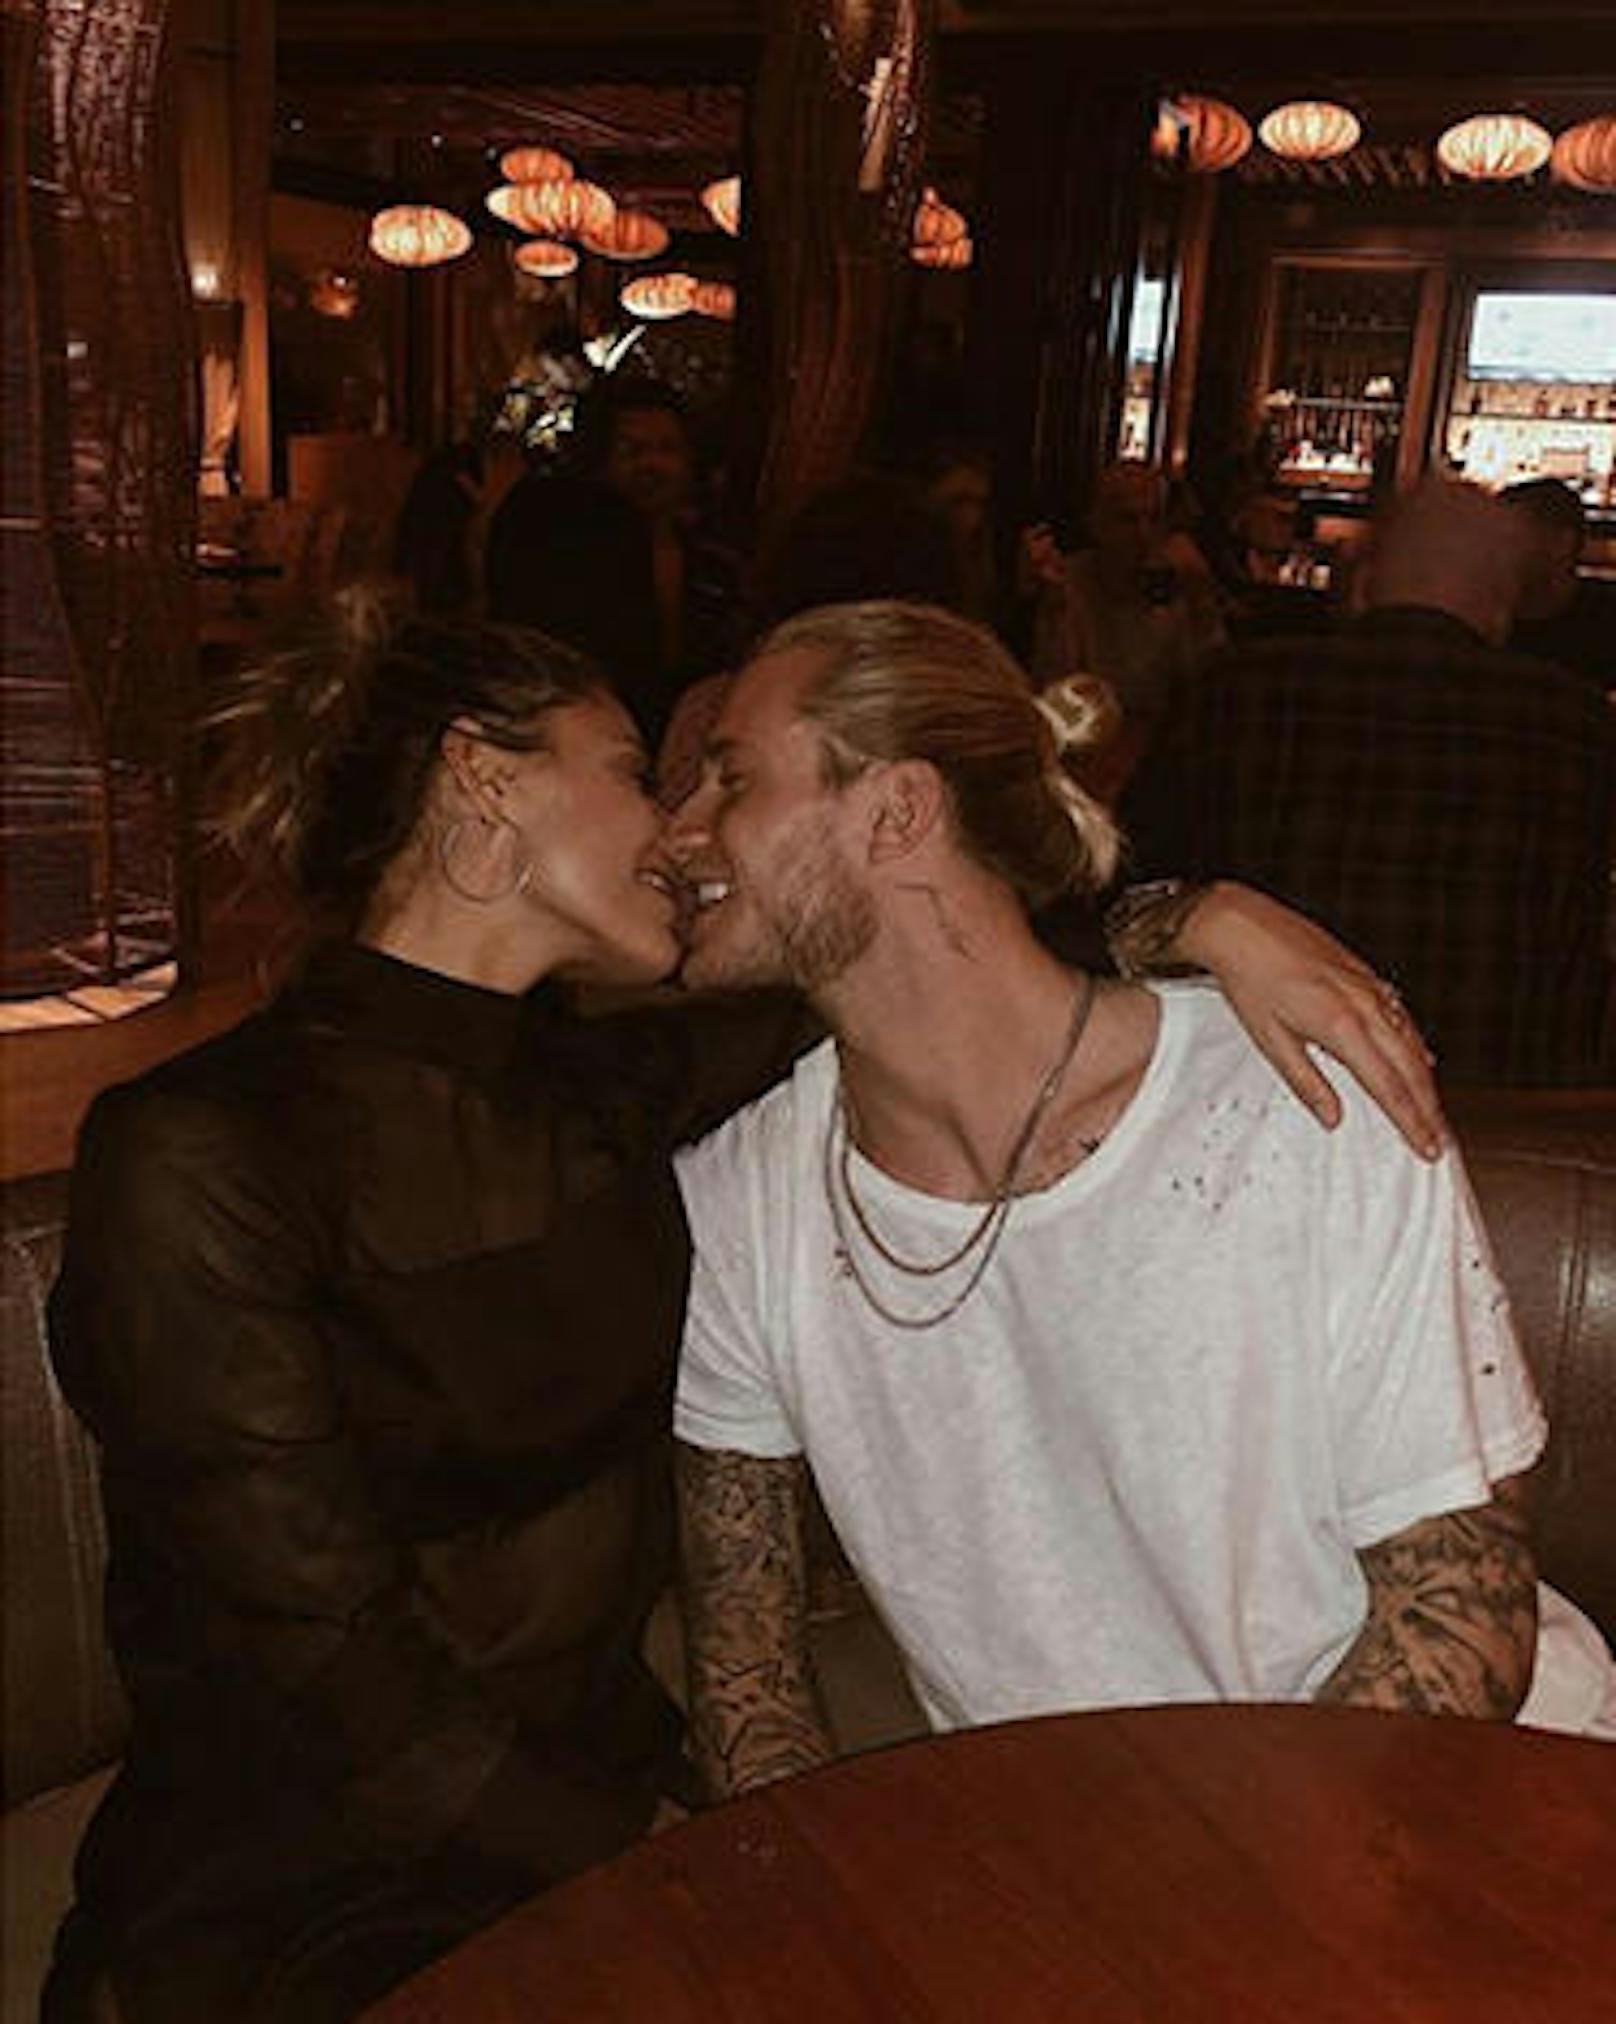 16.01.2019: Sophia Thomala streut ihrem neuen Freund auf Instagram Rosen. "Jetzt schon das beste Jahr", schreibt sie zu einem süßen Kuss-Foto.